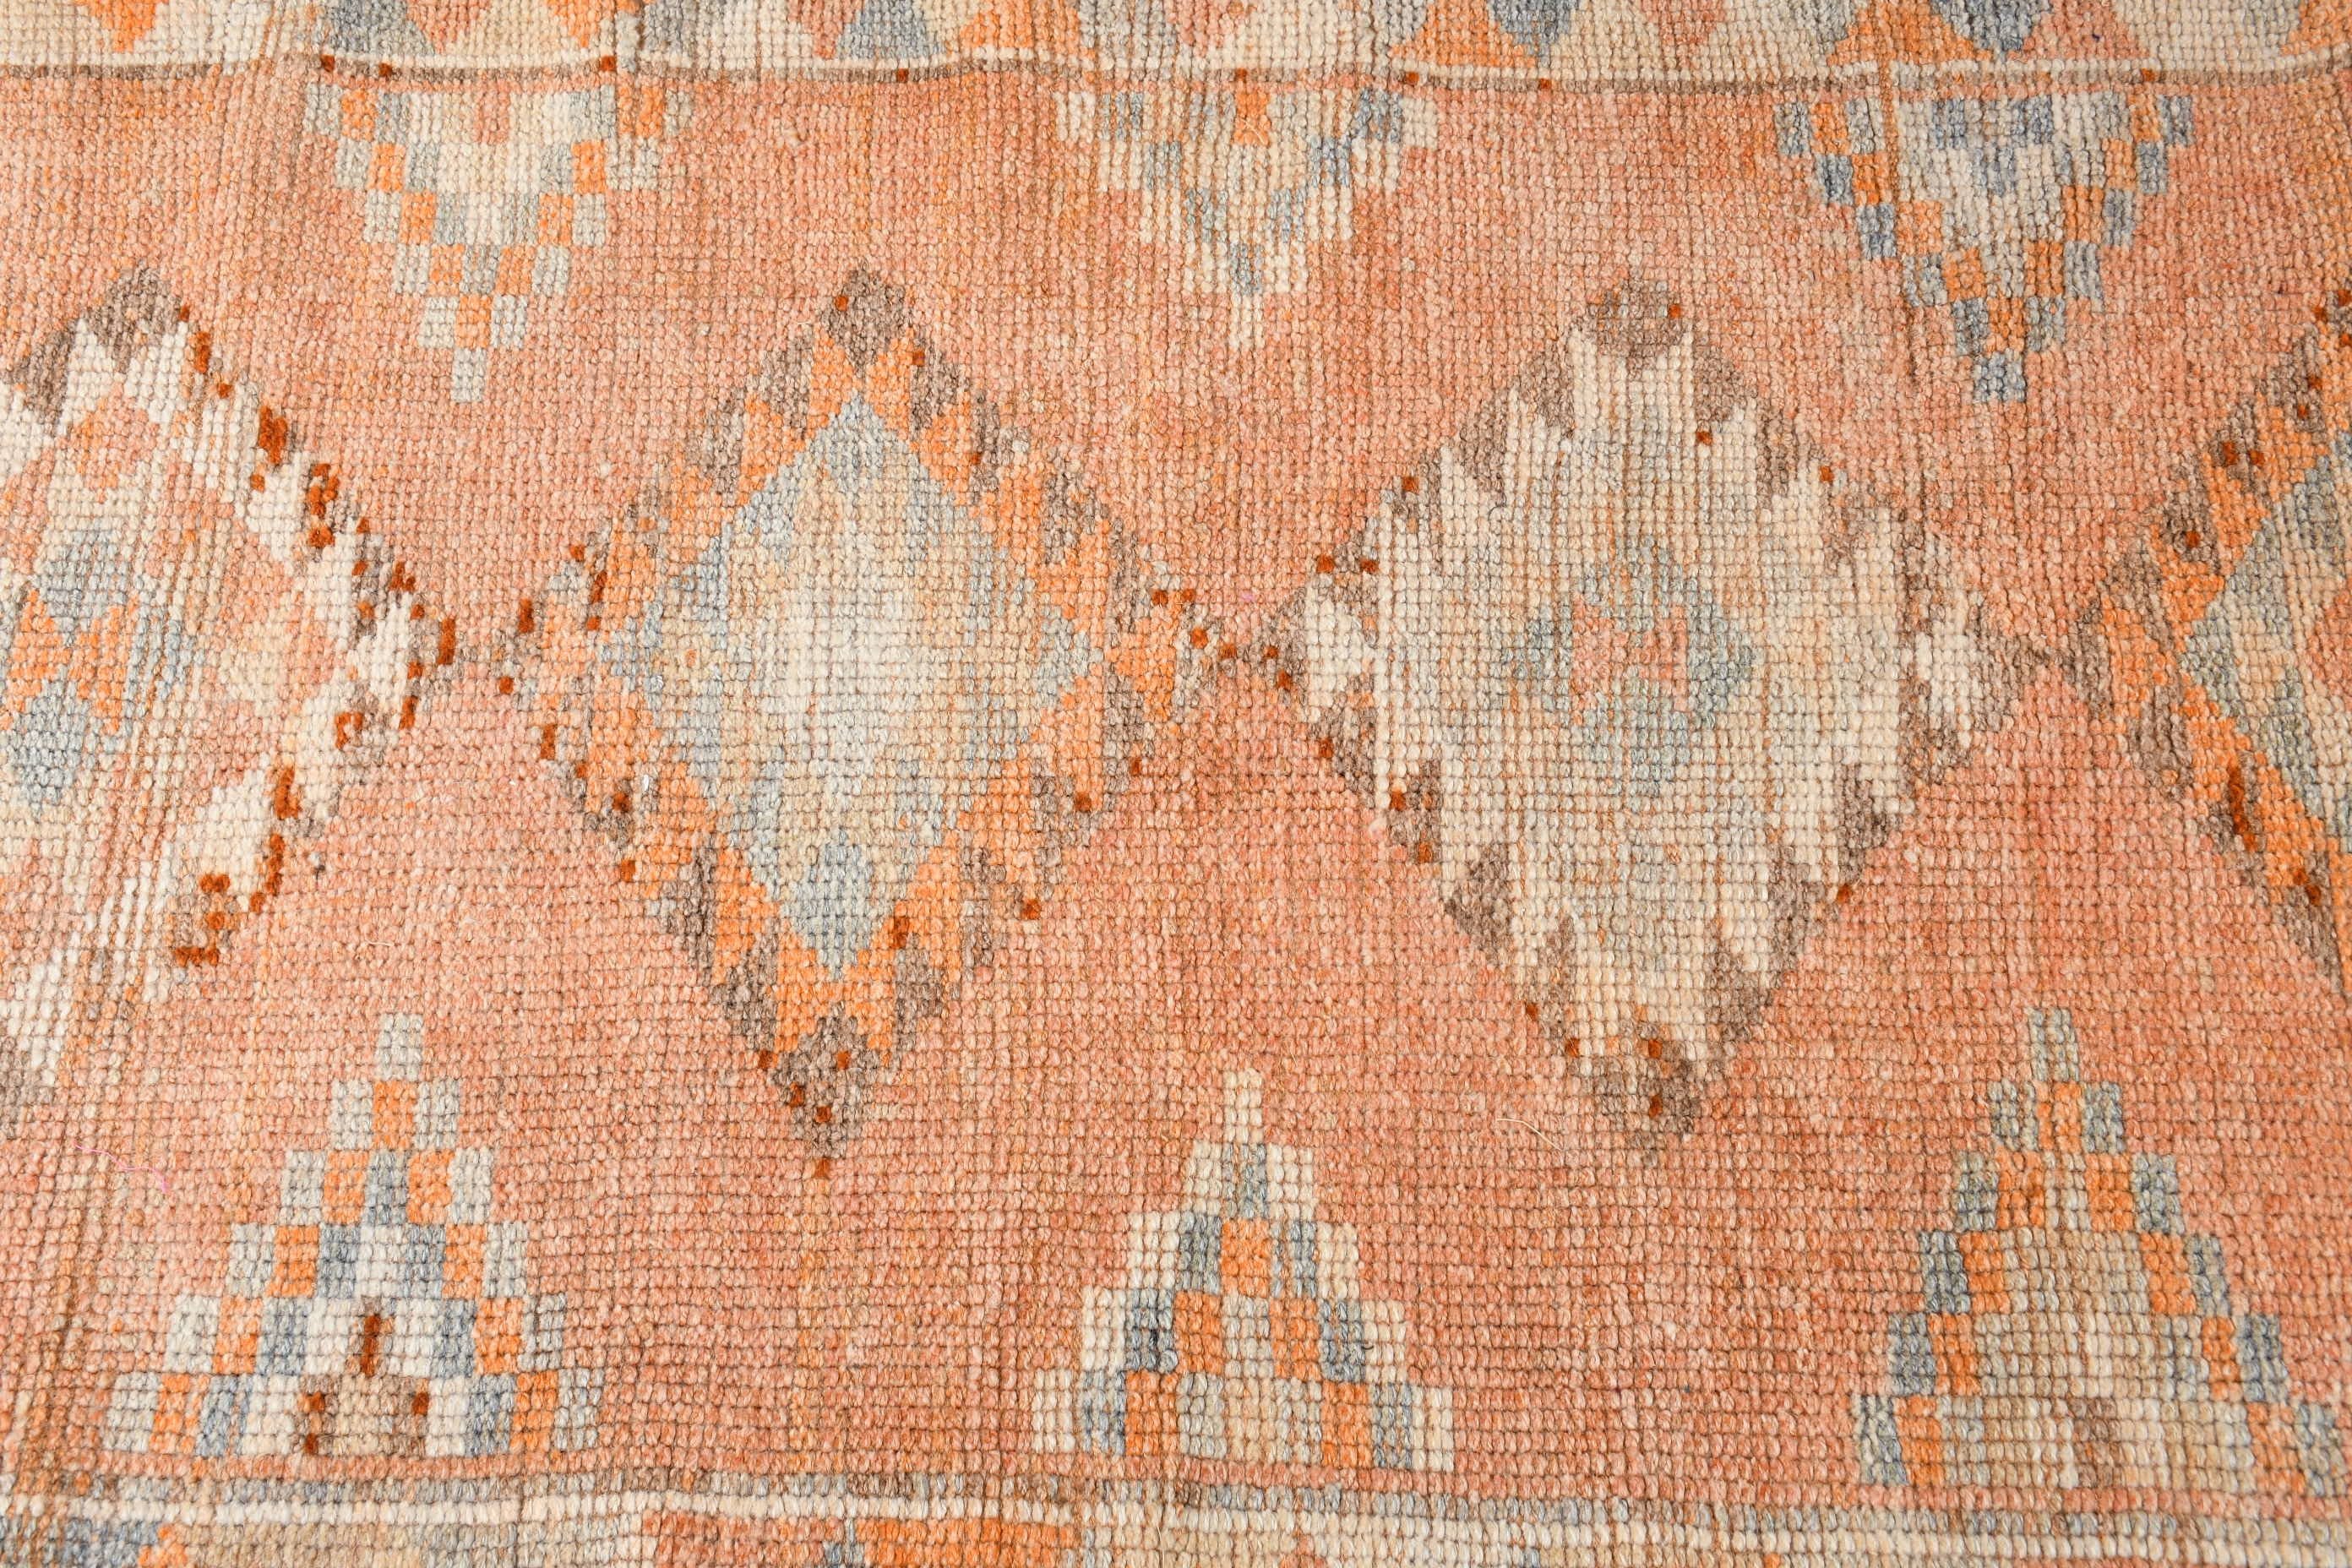 Floor Rug, Orange Anatolian Rugs, Vintage Rug, Turkish Rug, Rugs for Corridor, Oushak Rug, Wool Rug, 2.8x11.6 ft Runner Rug, Stair Rug